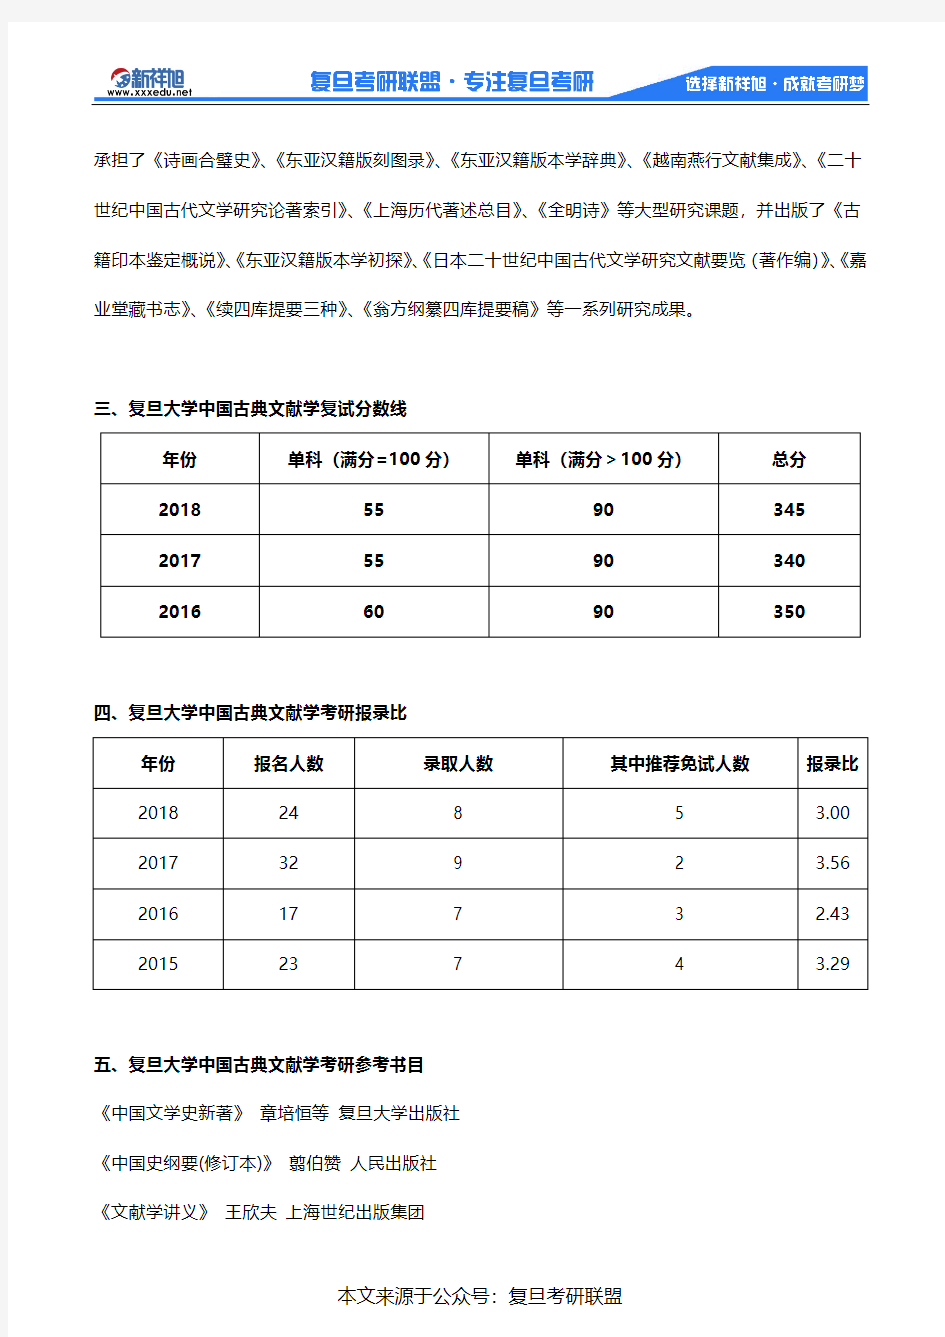 2020年复旦大学古籍所中国古典文献学考研考试科目、招生人数、参考书目、报录比